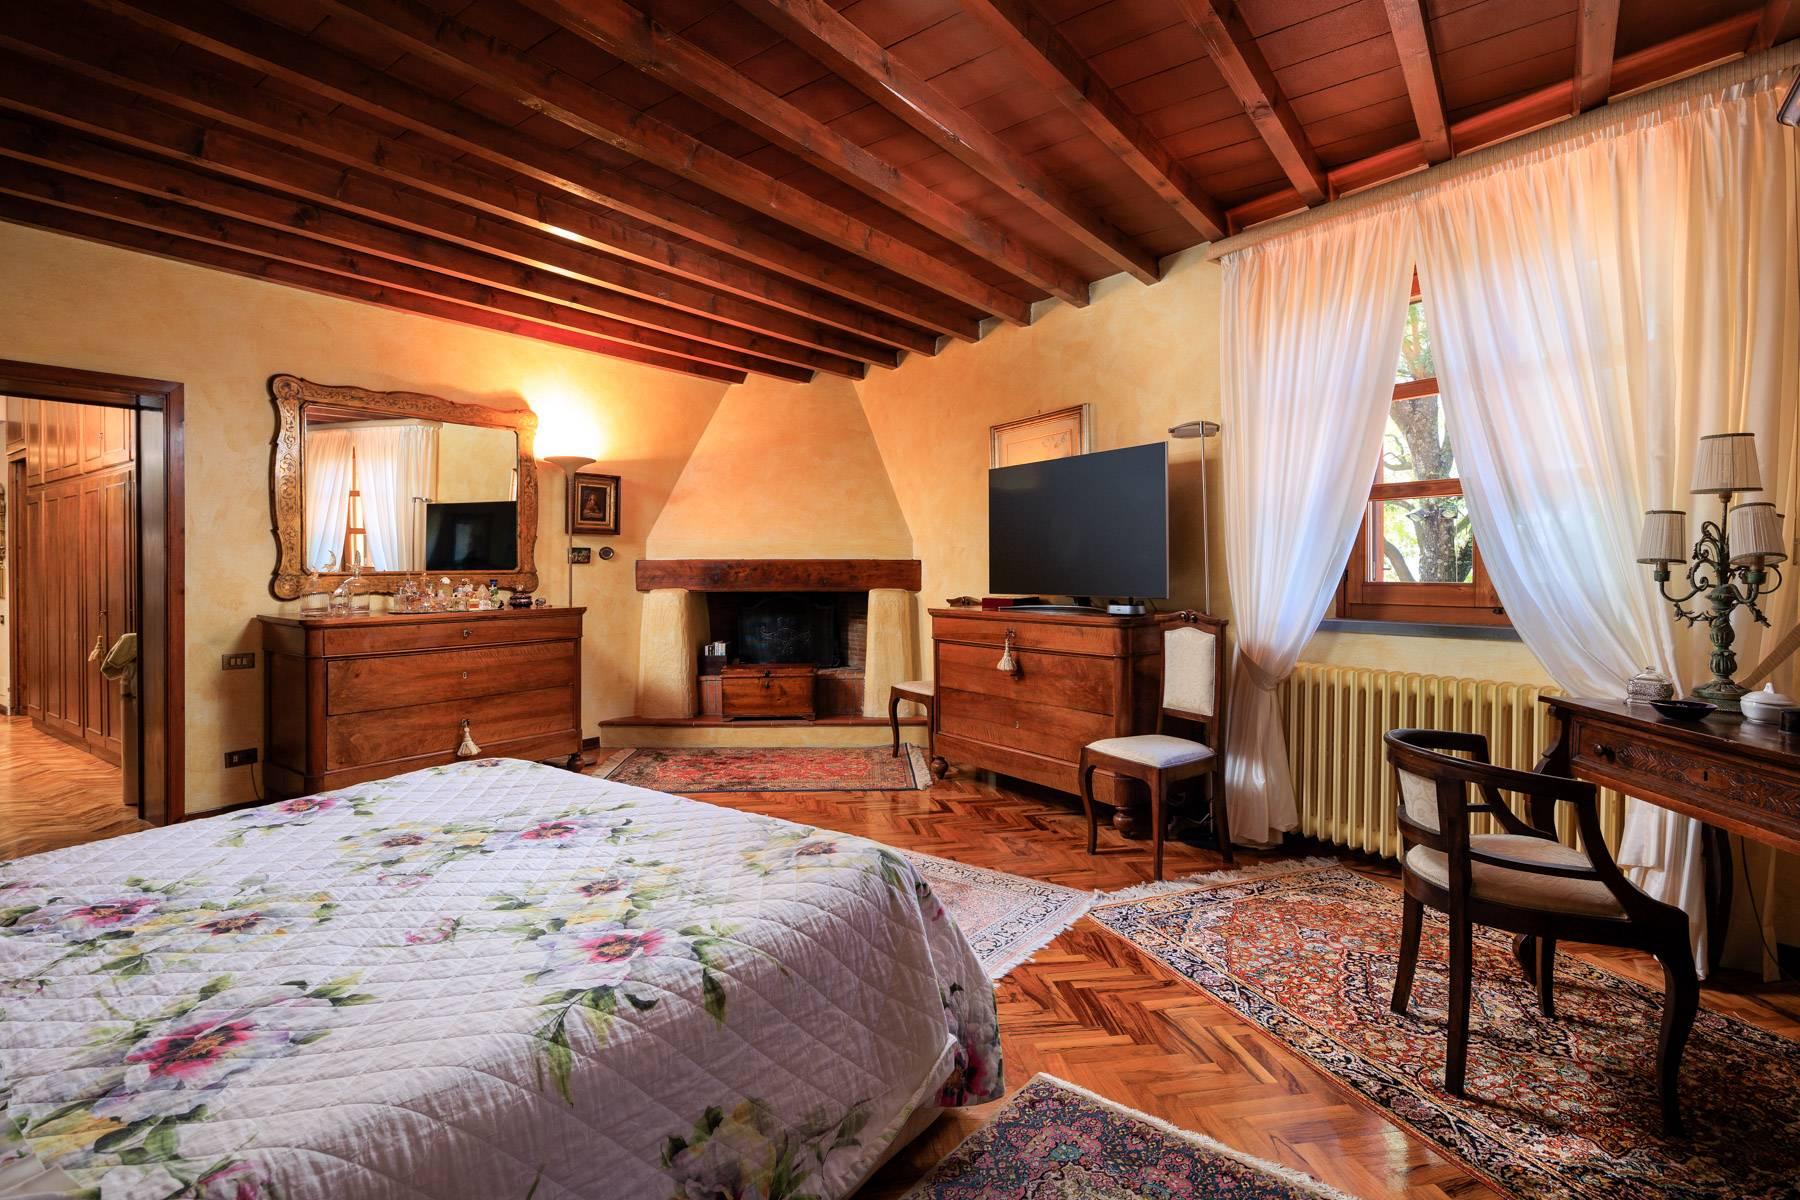 Casale in stile Toscano con 30 ettari di terreno - 18